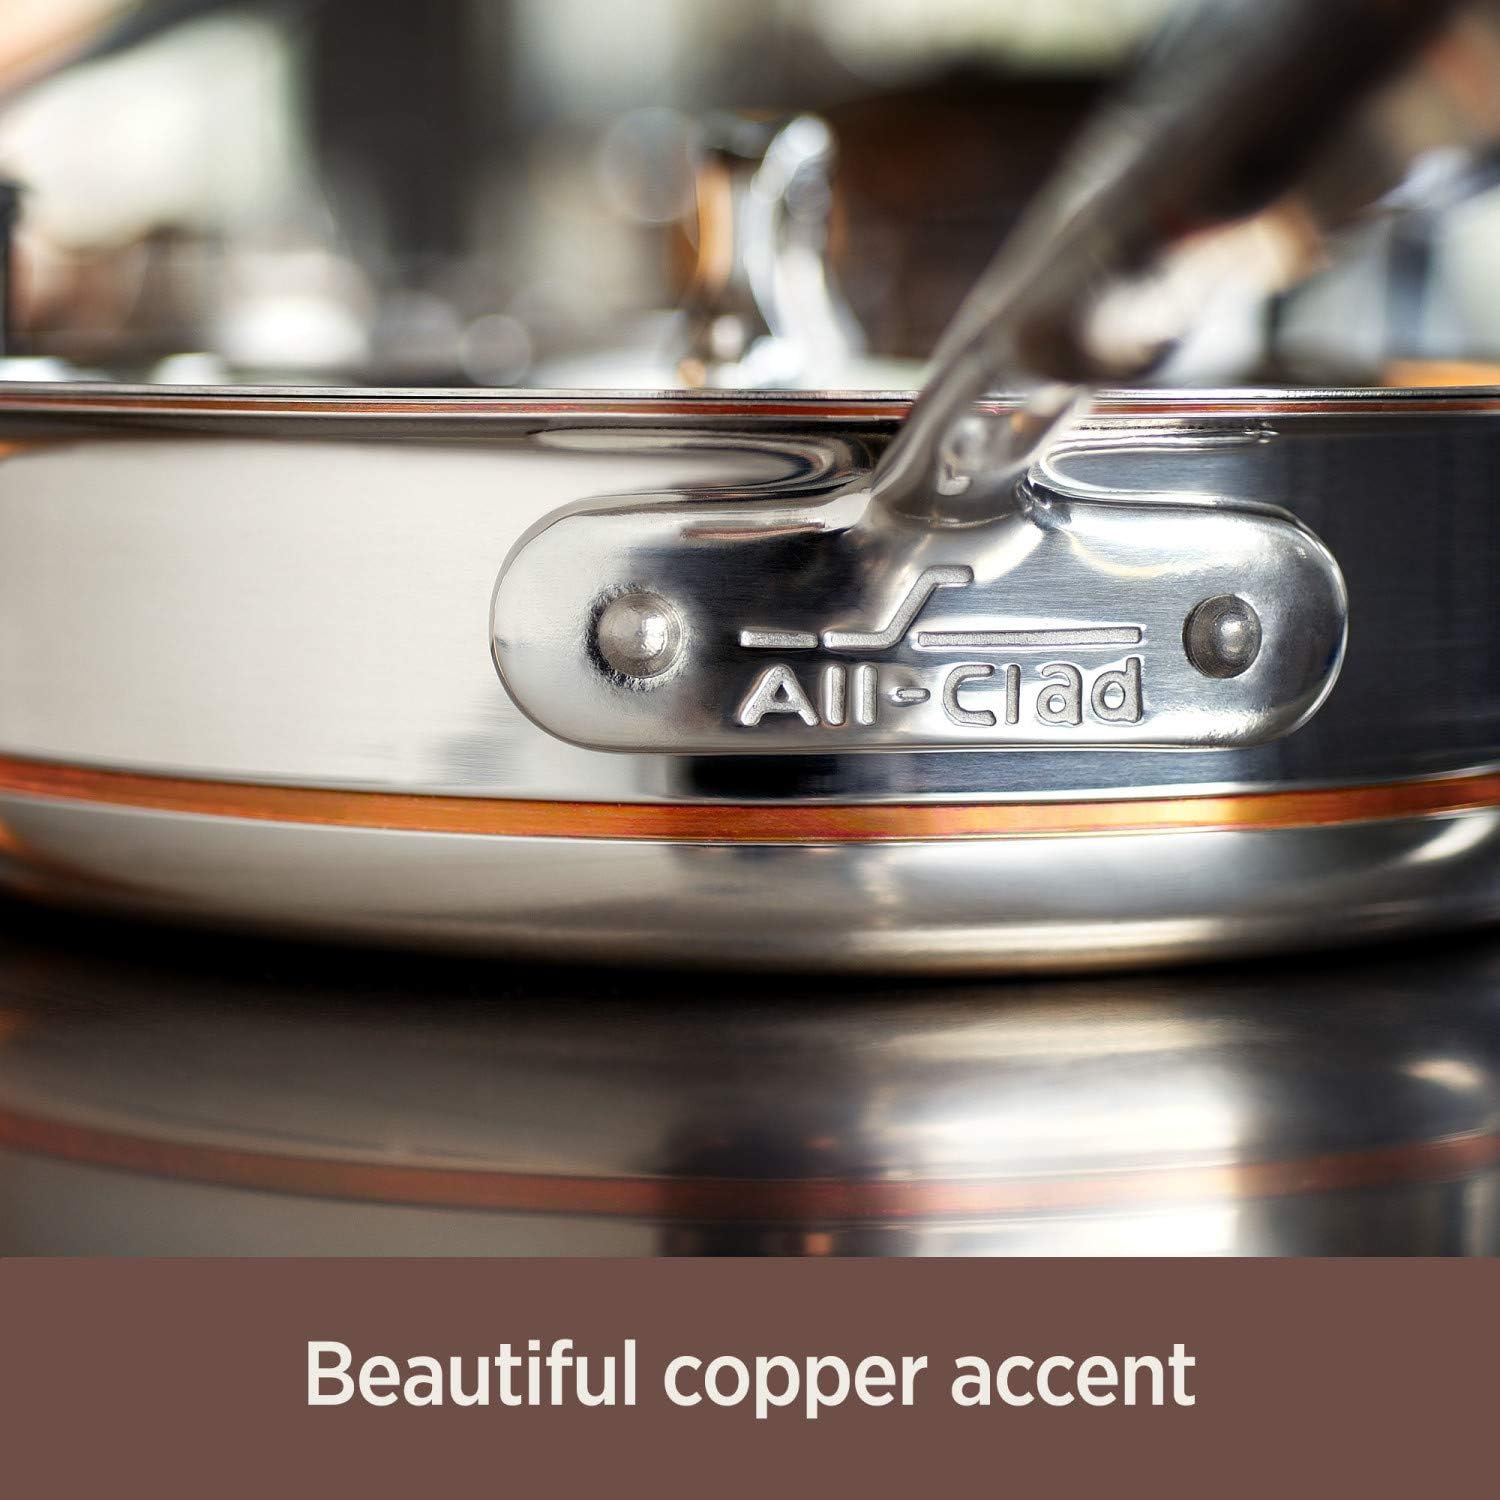 3-Quart Copper Core Saute Pan I All-Clad